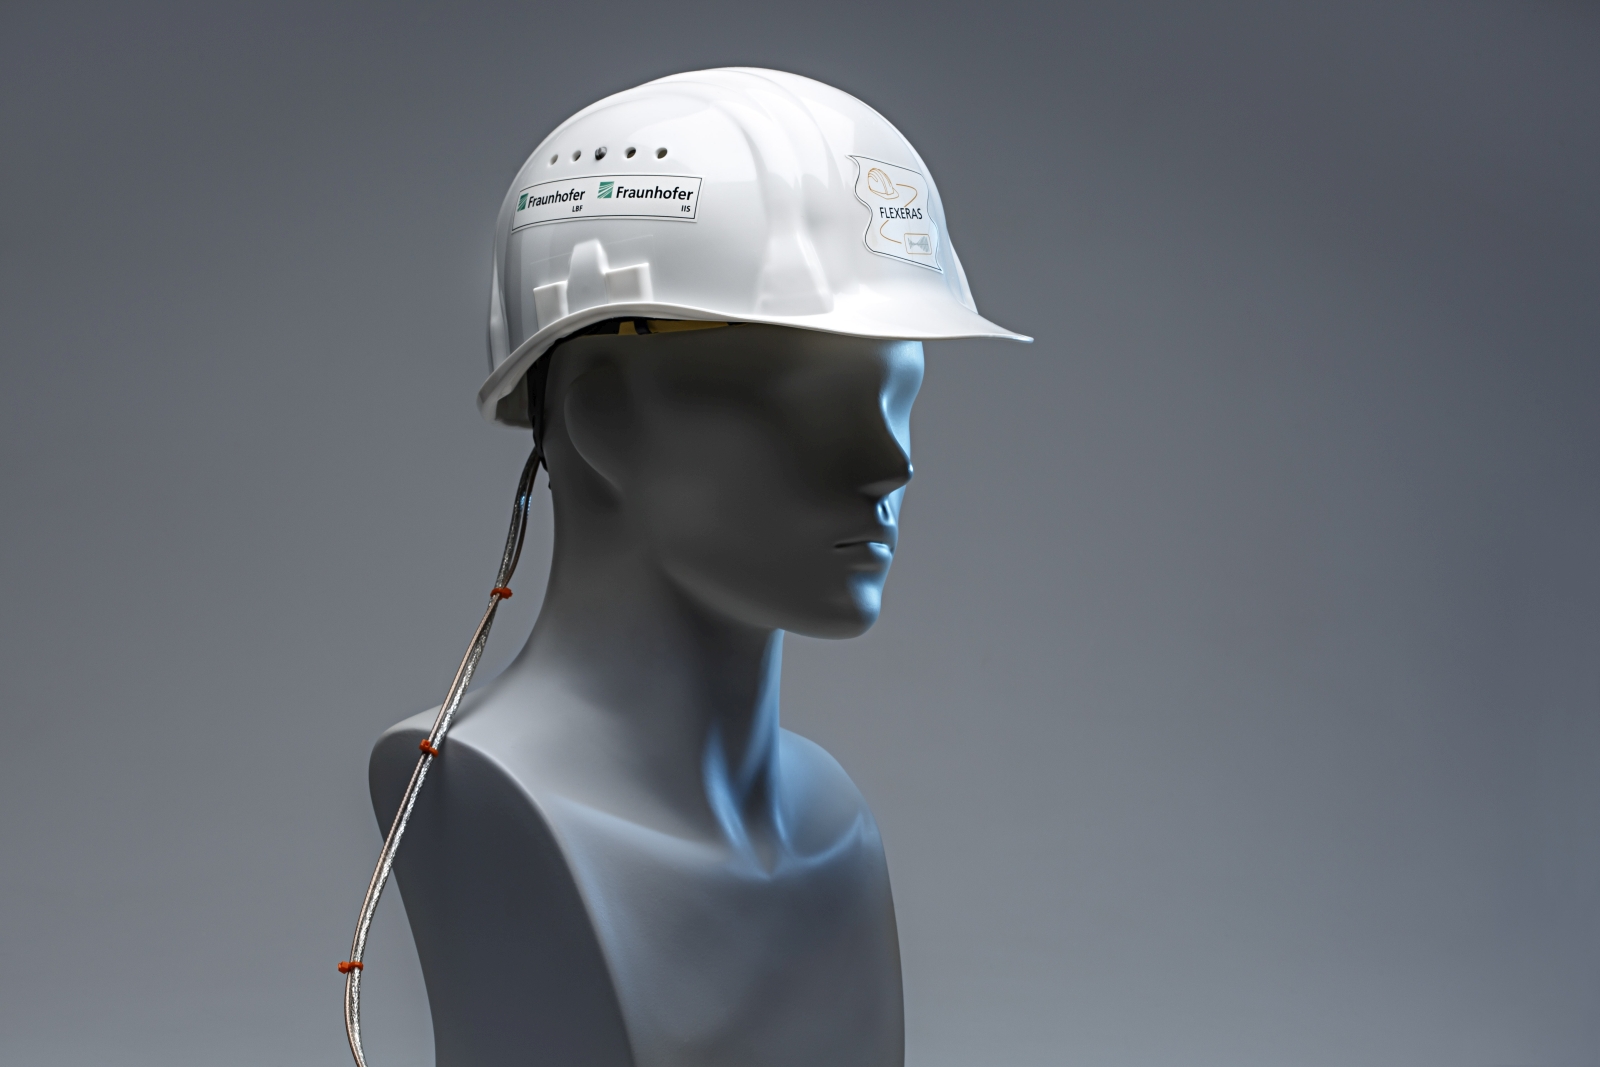 Der Piezo-Elektret-Wandler ist unauffÃ¤llig im inneren Befestigungsriemen des Helms eingearbeitet. Das Foto zeigt einen Demonstrator der Technik. (Bild: Â©Ursula Raapke/Fraunhofer-Institut LBF)